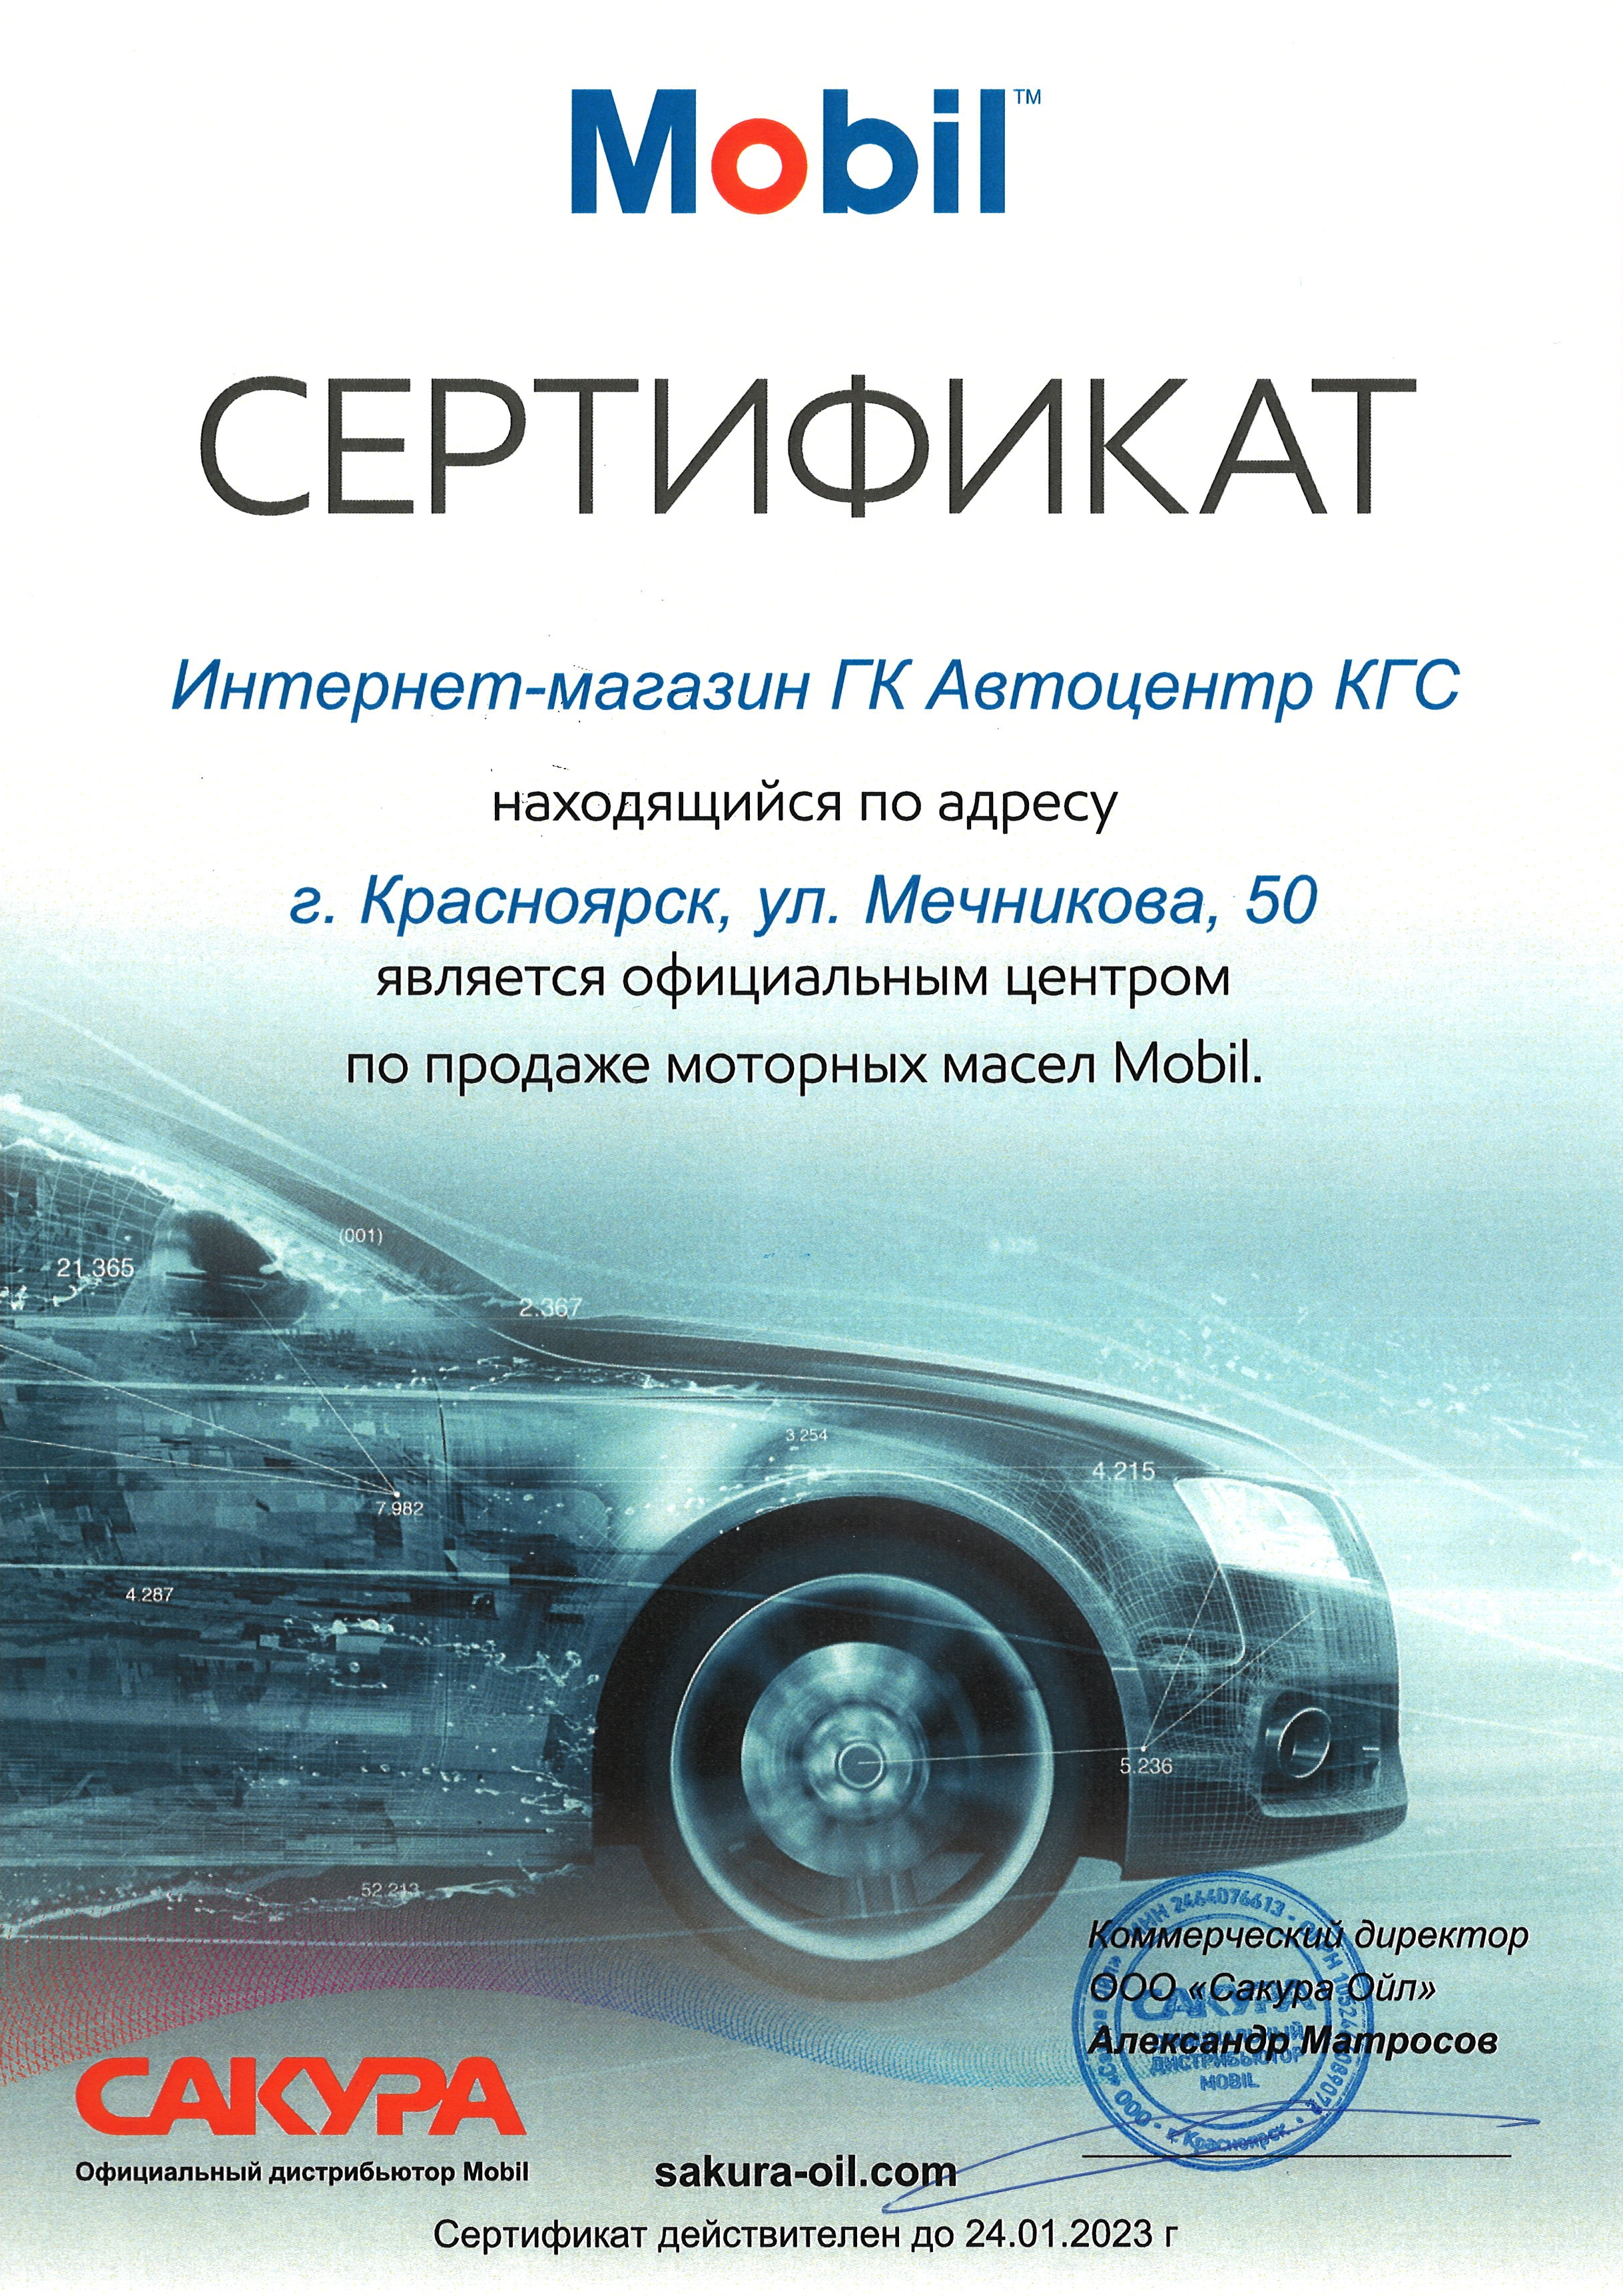 Сертификат Интернет-магазина ГК Автоцентр КГС - официального центра по продаже моторных масел Mobil